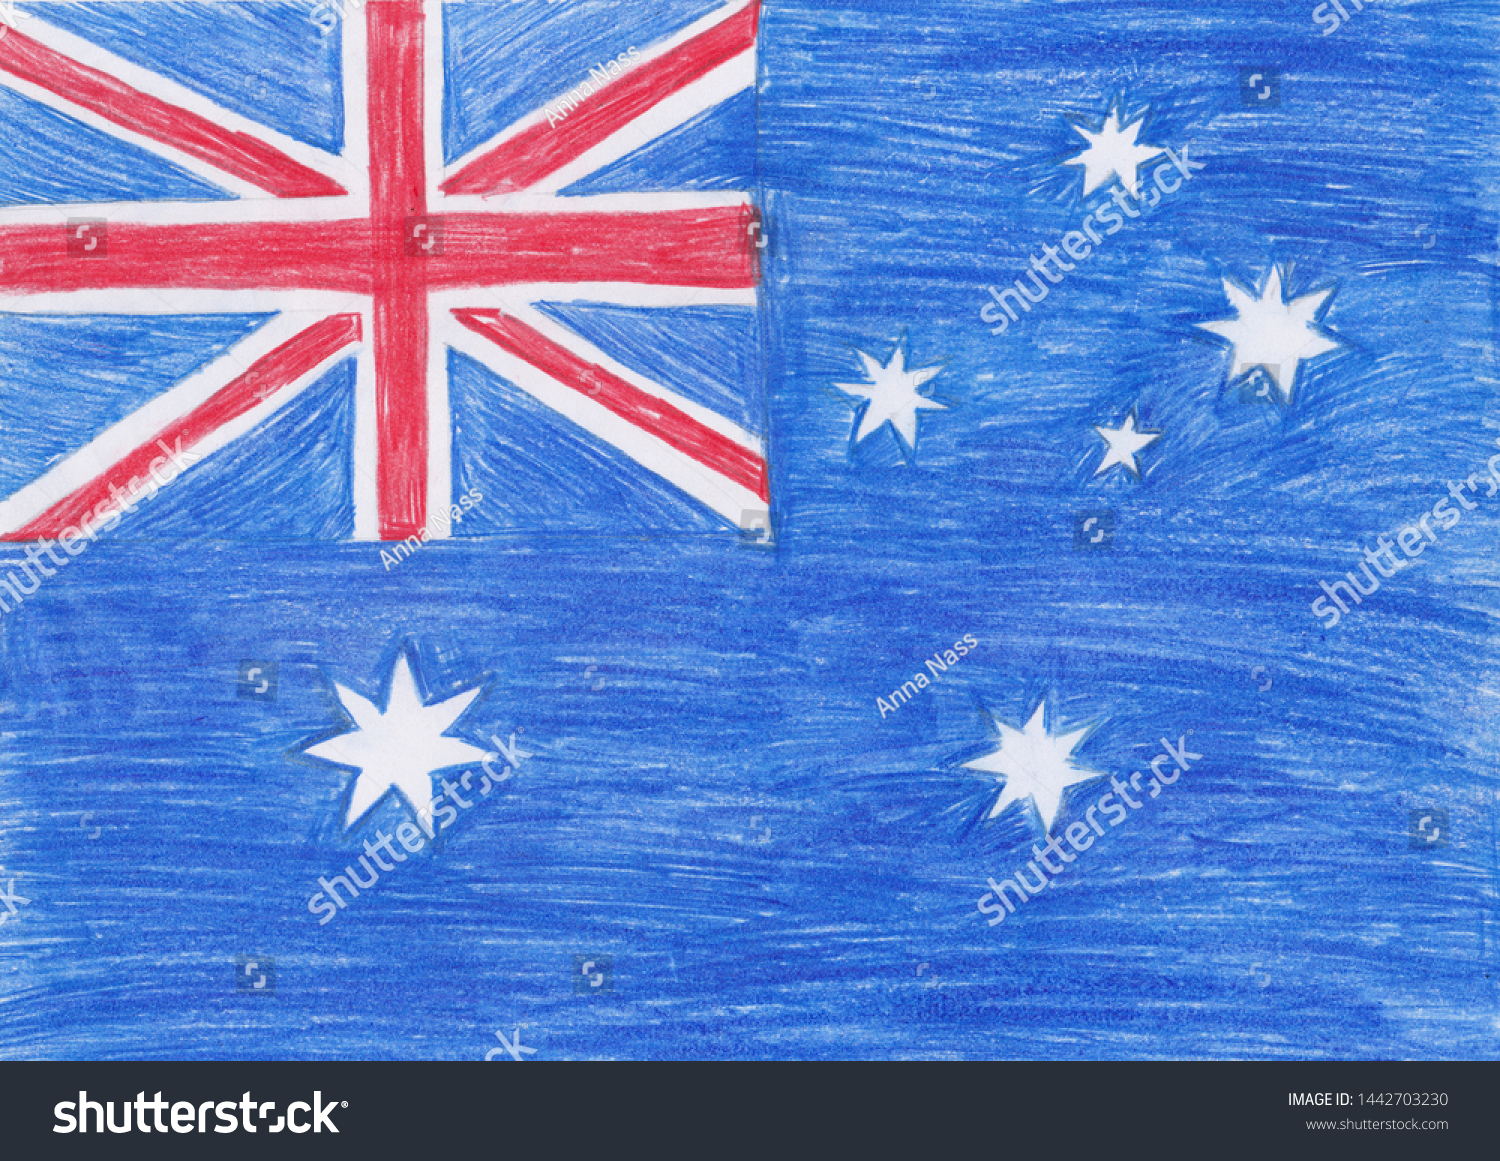 Flag Australia On Paper Stock Illustration 1442703230